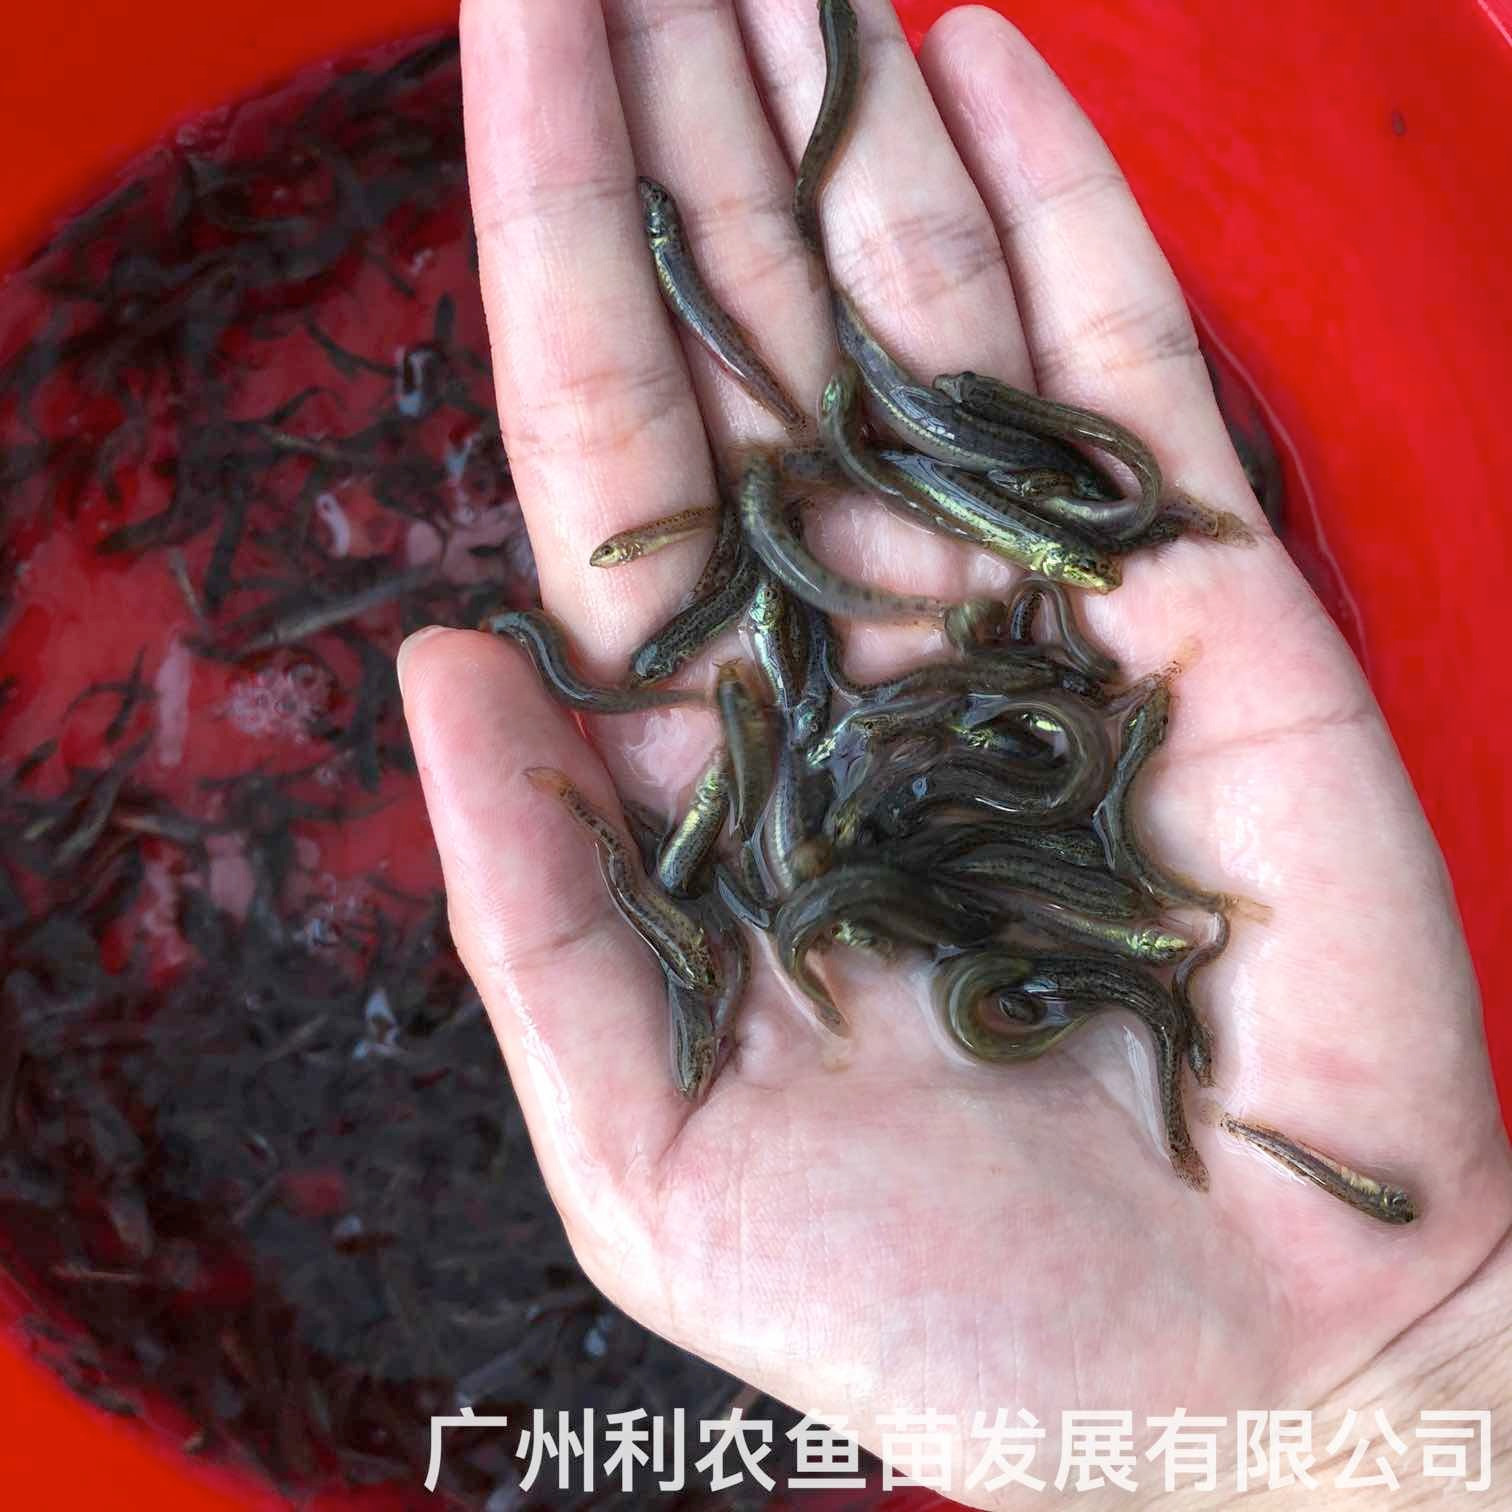 广西钦州台湾泥鳅苗出售广西柳州泥鳅鱼苗批发